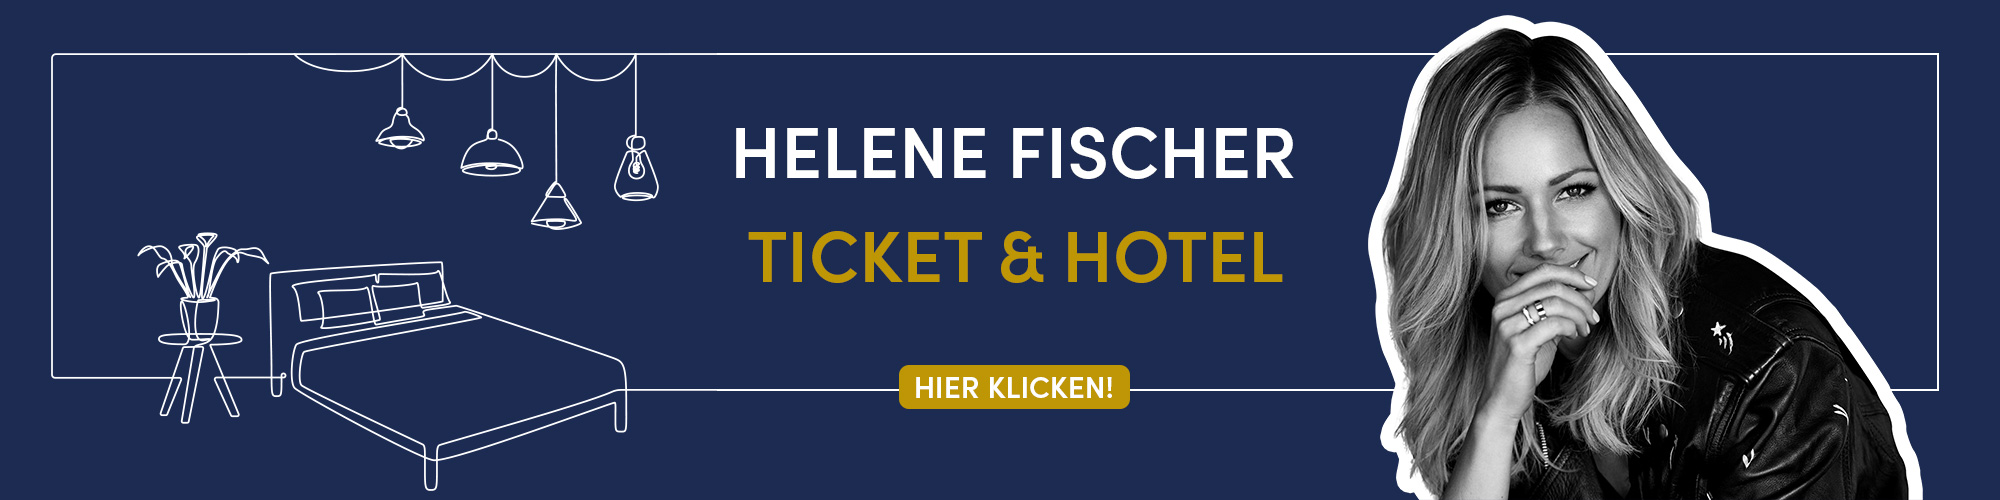 Banner_Helene-Fischer_Ticket-Hotel_2000x500_Jun2022_V1_2